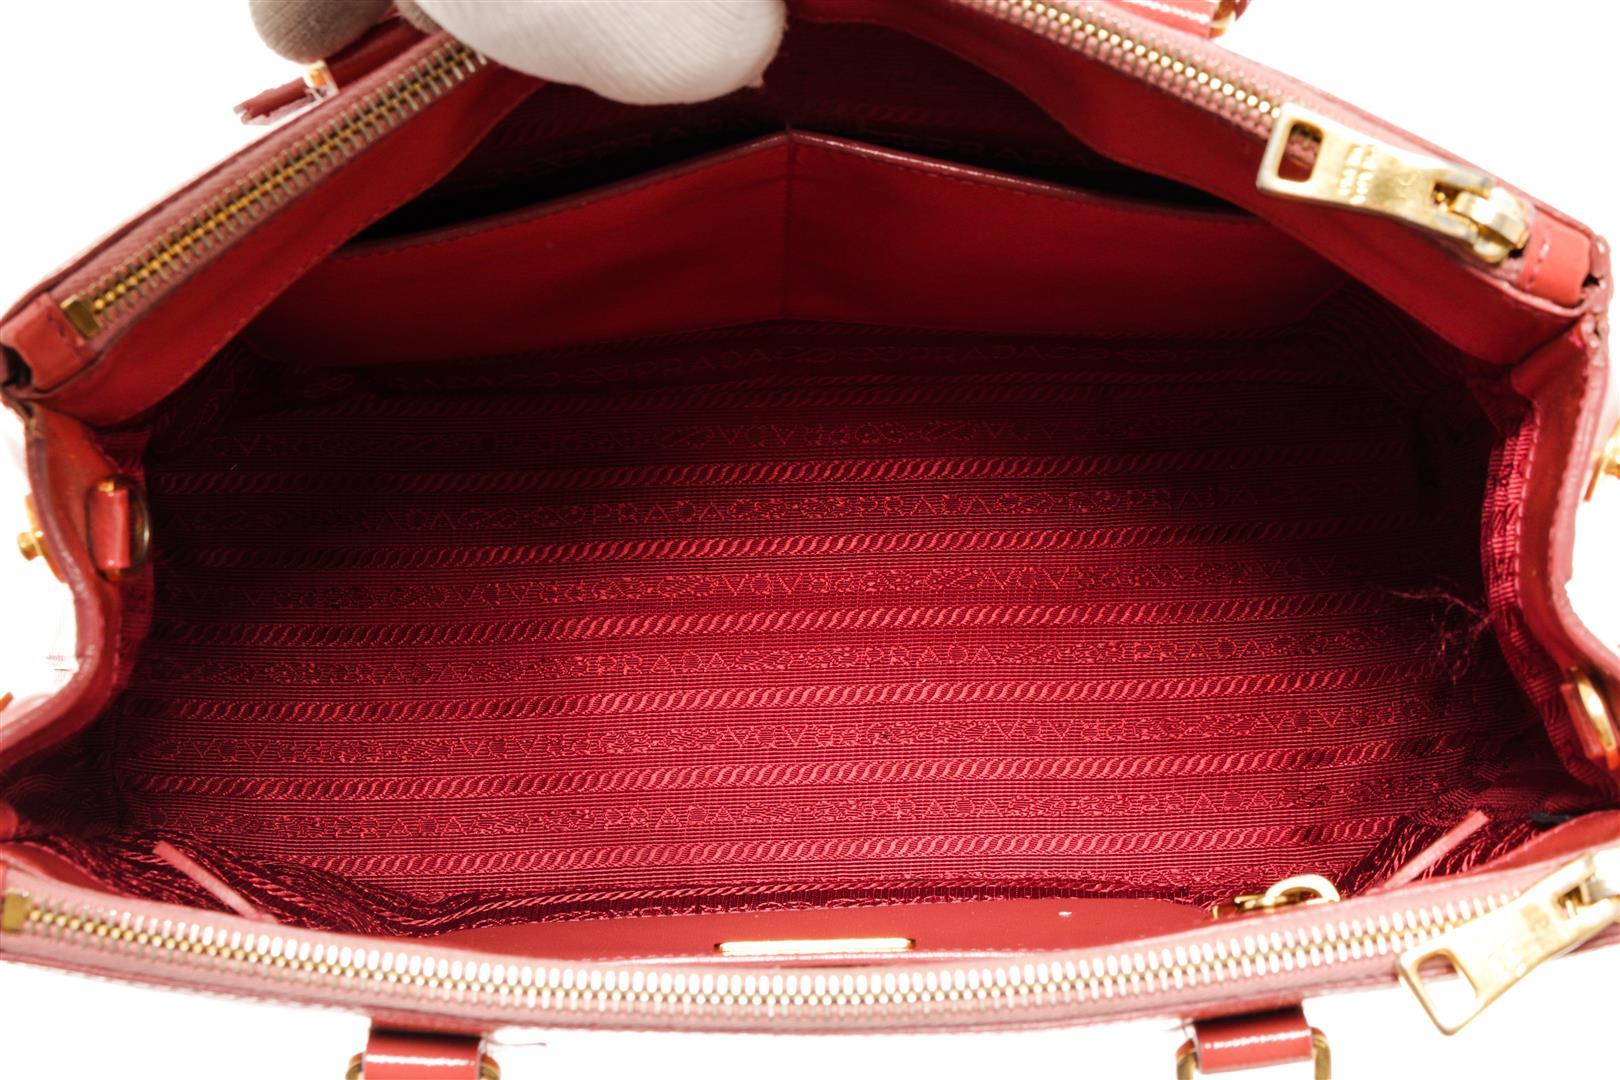 Prada Pink Leather Medium Tote Bag